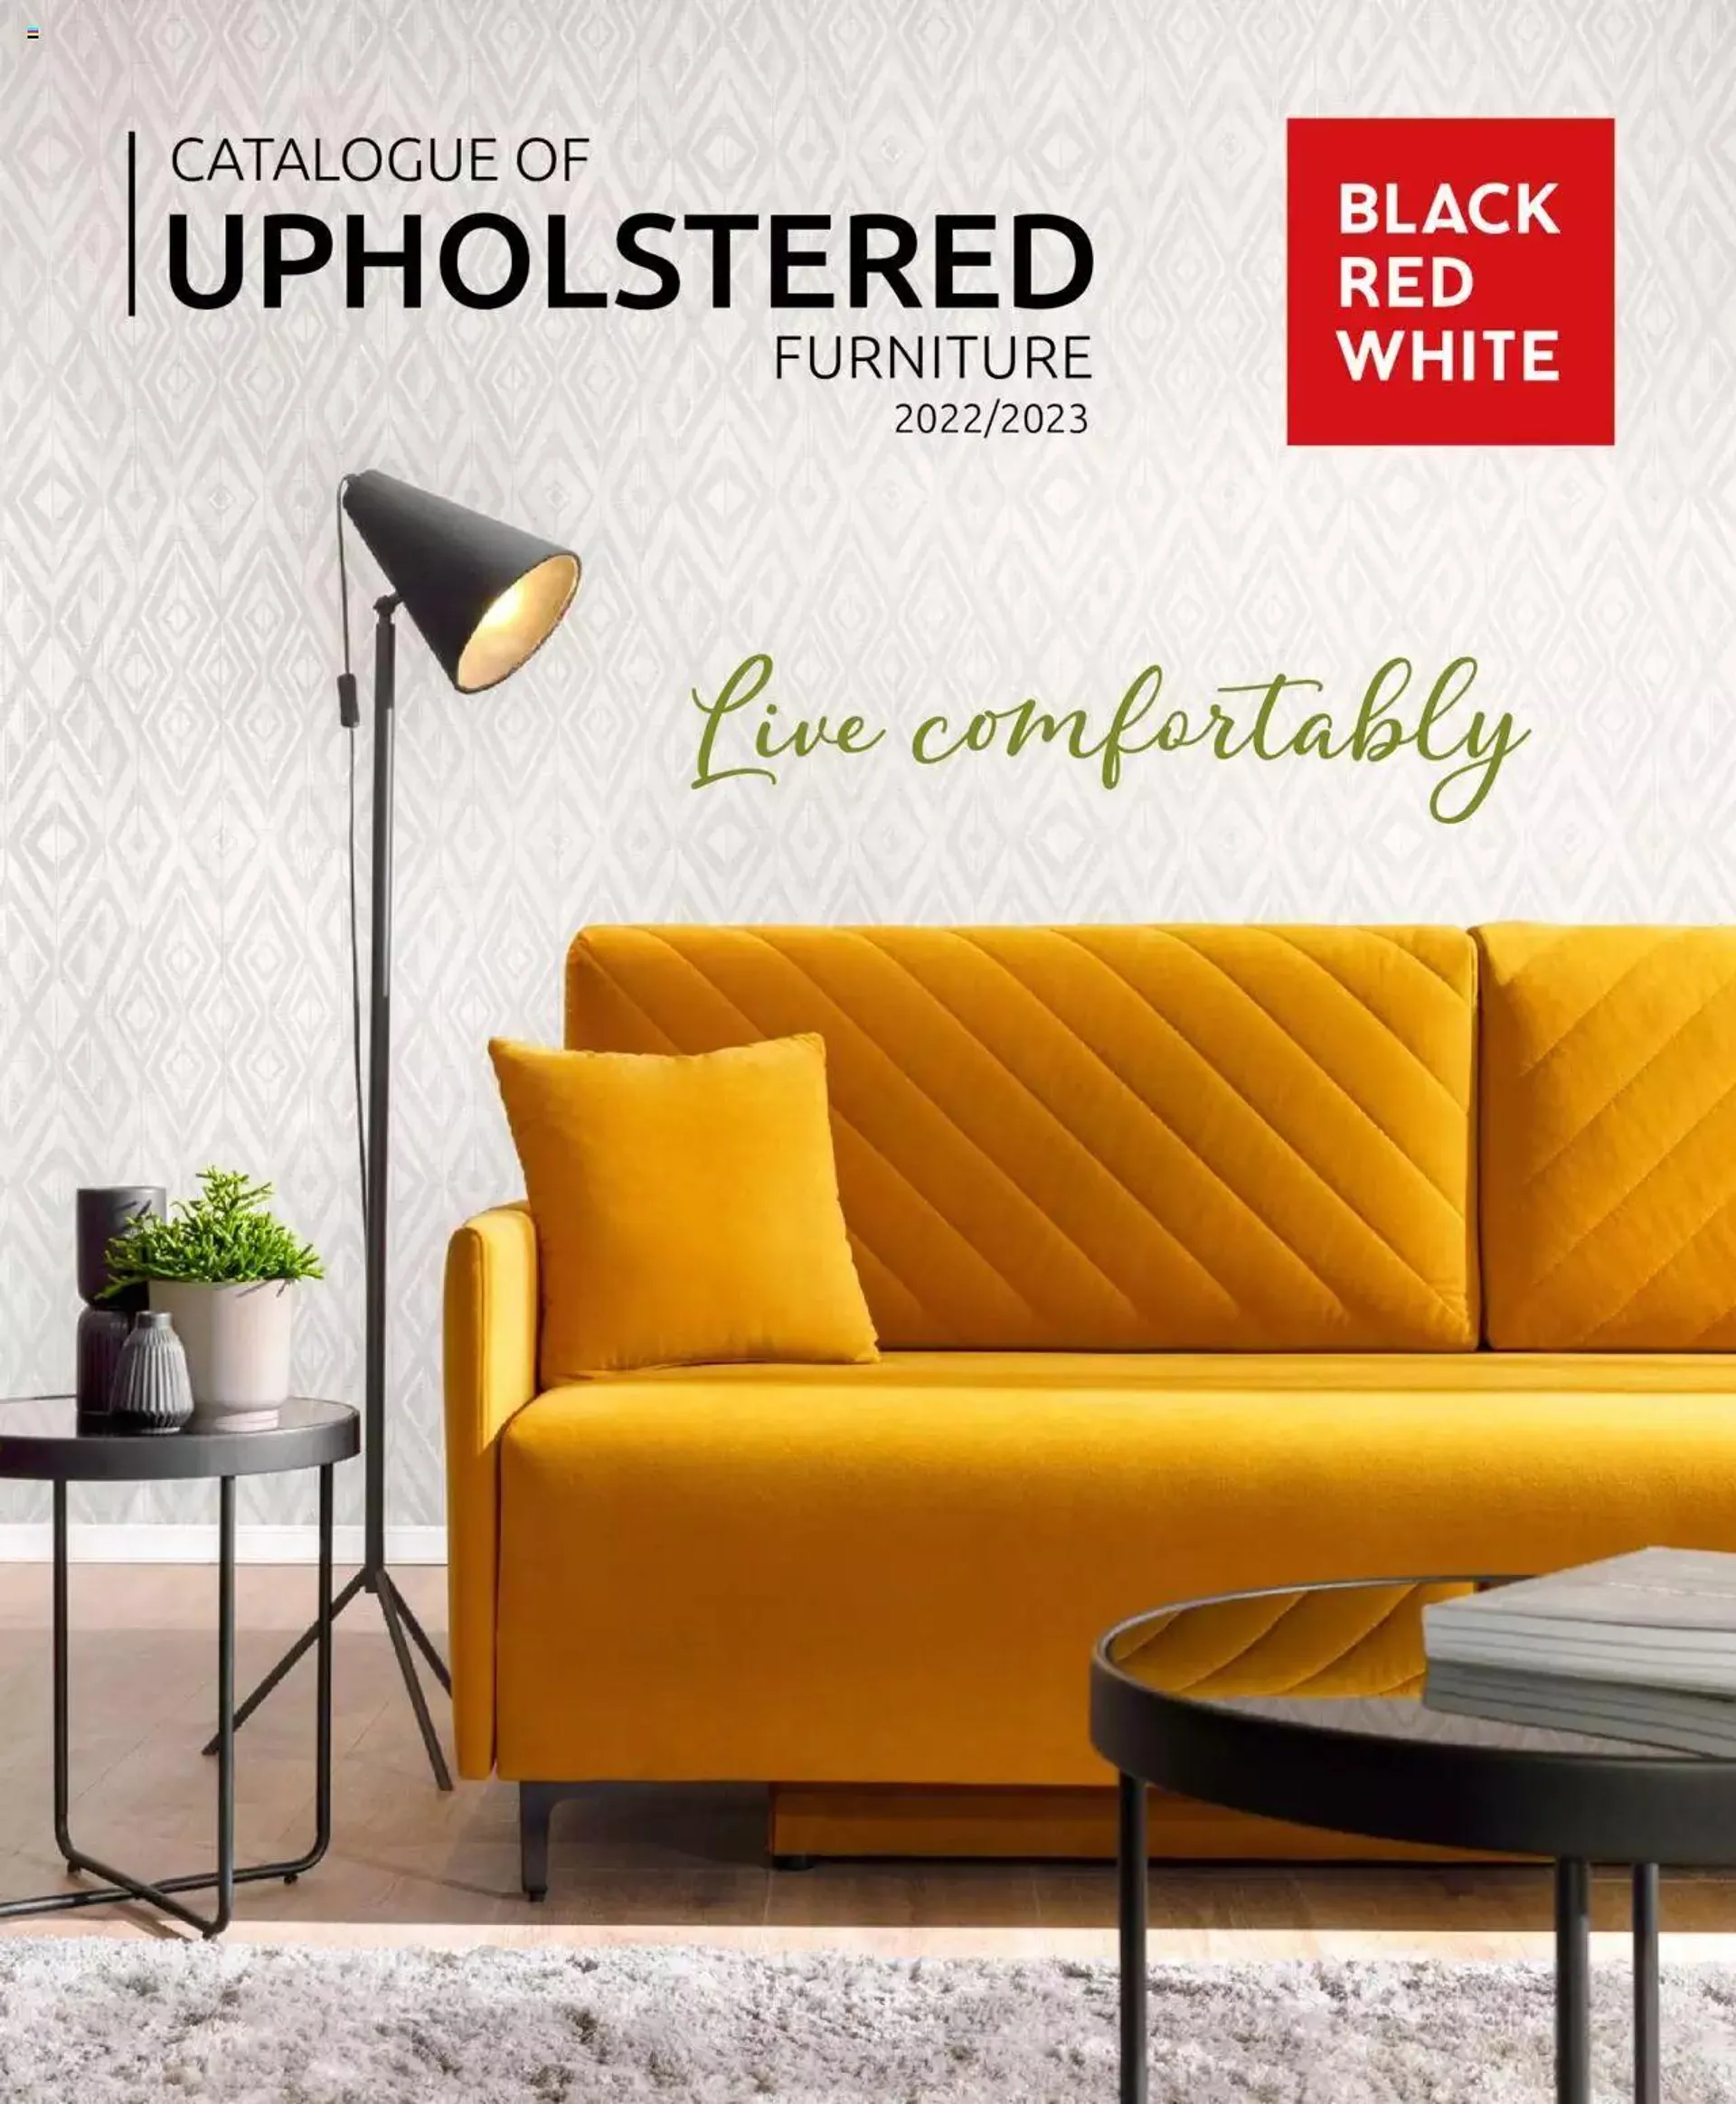 Black Red White catalog - Upholstered Furniture - 0